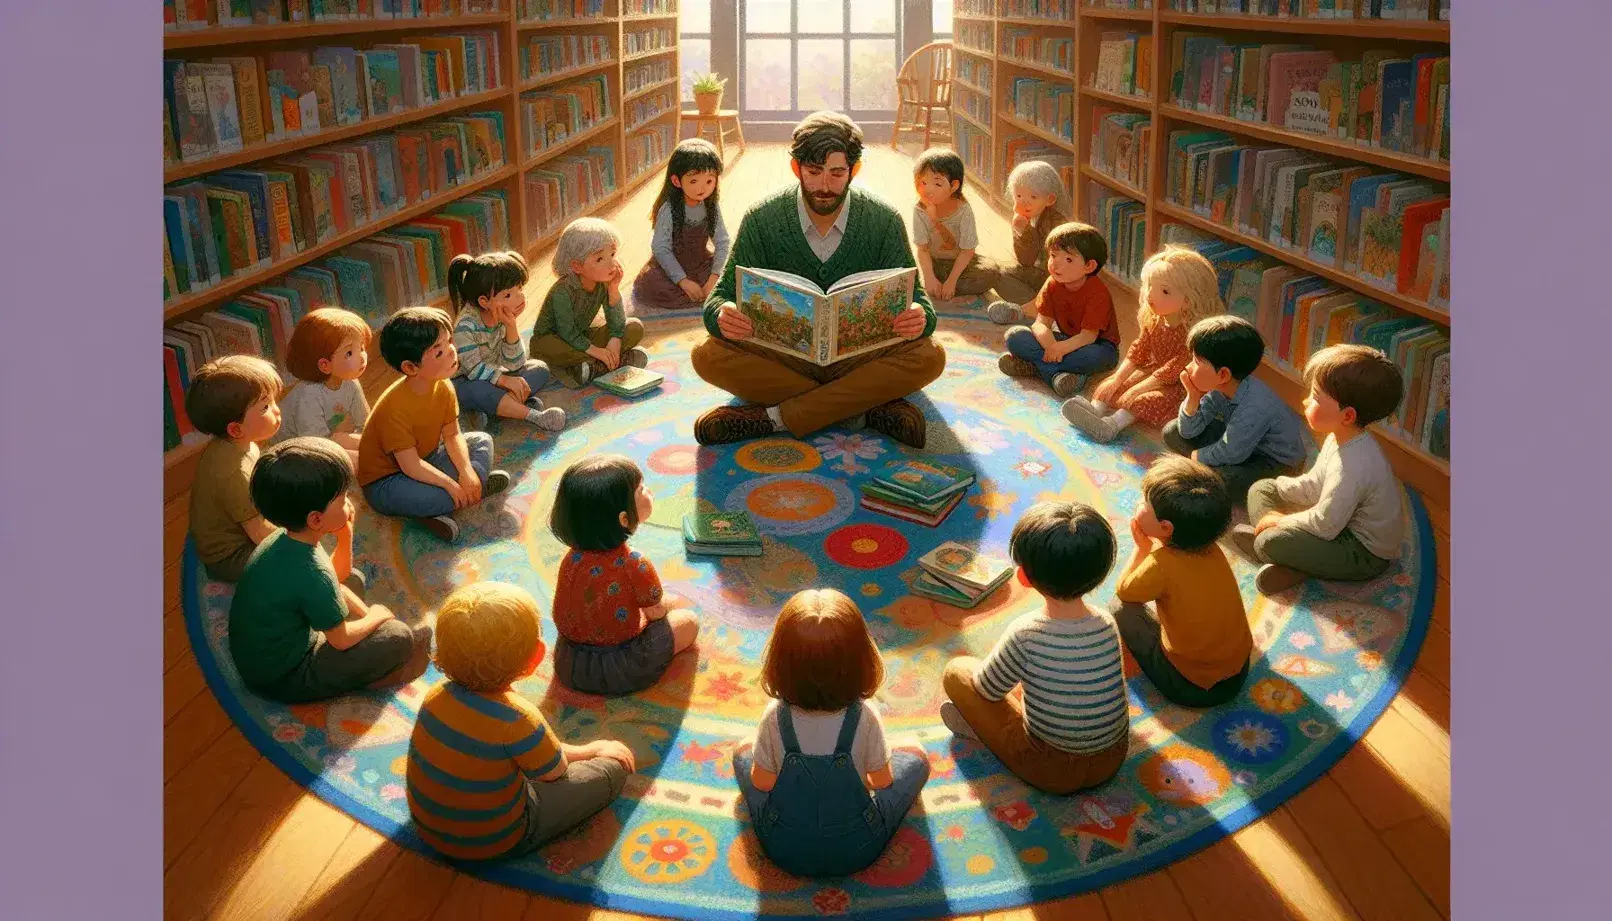 Niños atentos escuchando a un adulto leer un libro ilustrado en una biblioteca, sentados en una alfombra colorida con estantes de libros al fondo.